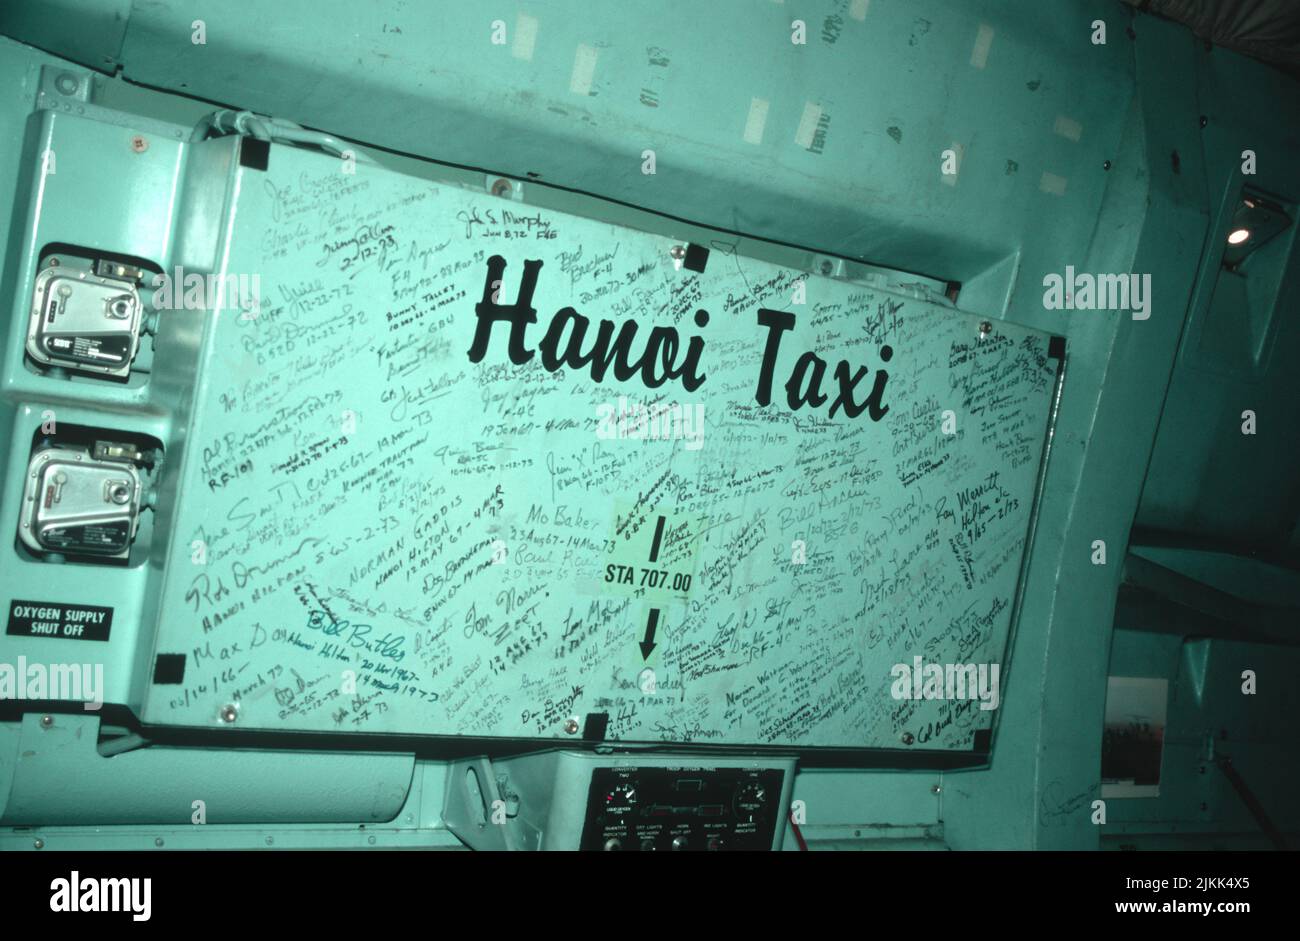 Panel de firmas en el Hanoi Taxi, que estaba en exhibición en el MCAS Miramar en San Diego, California Foto de stock